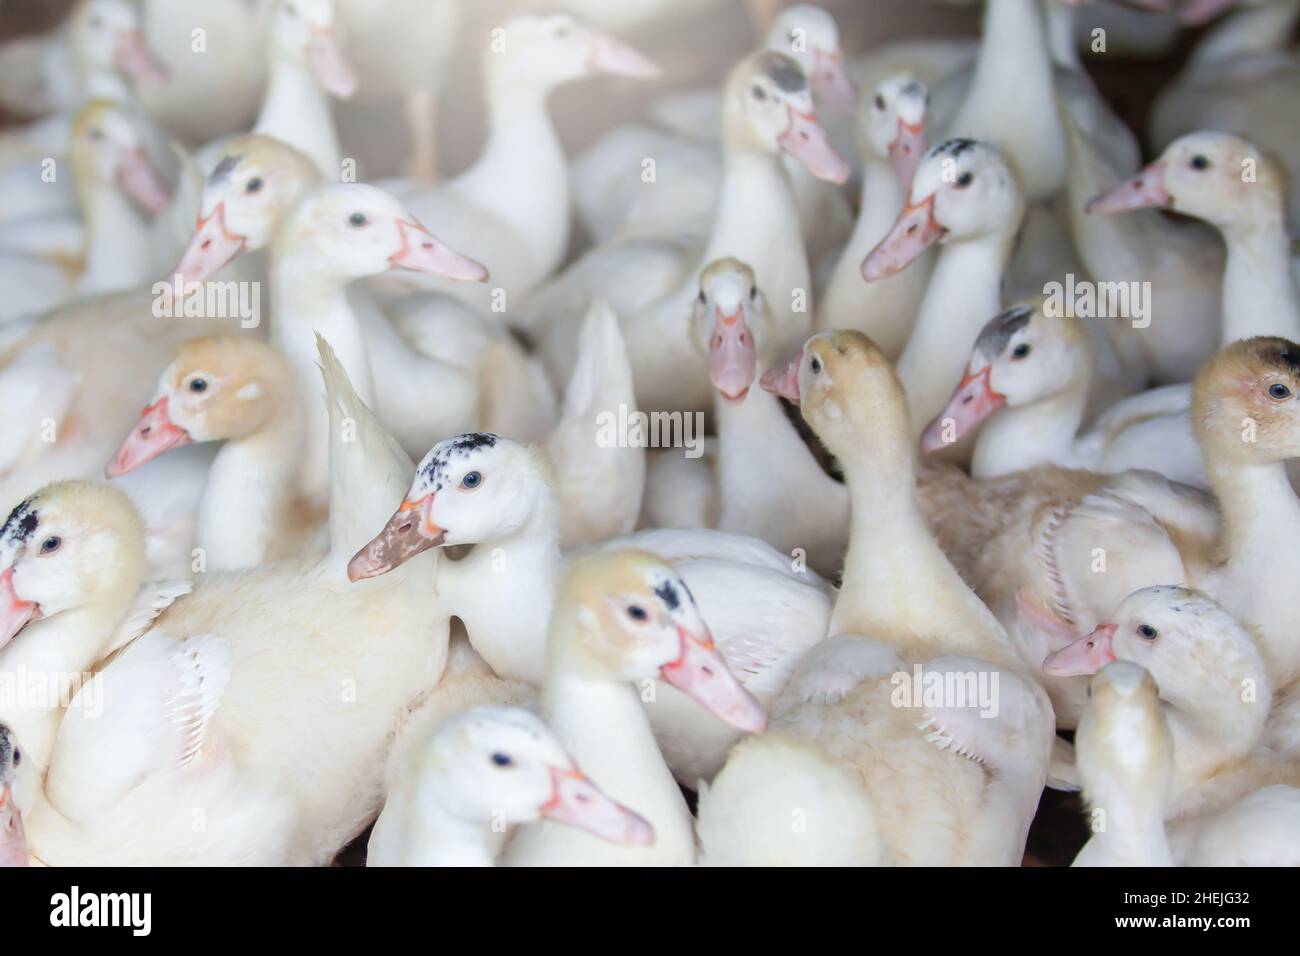 Eine Herde weißer Enten in einer Geflügelfarm, Freilandenten. Eine offene Farm in Thailand. Landwirtschaft, Tierkonzepte. Nahaufnahme. Selektiver Fokus. Stockfoto